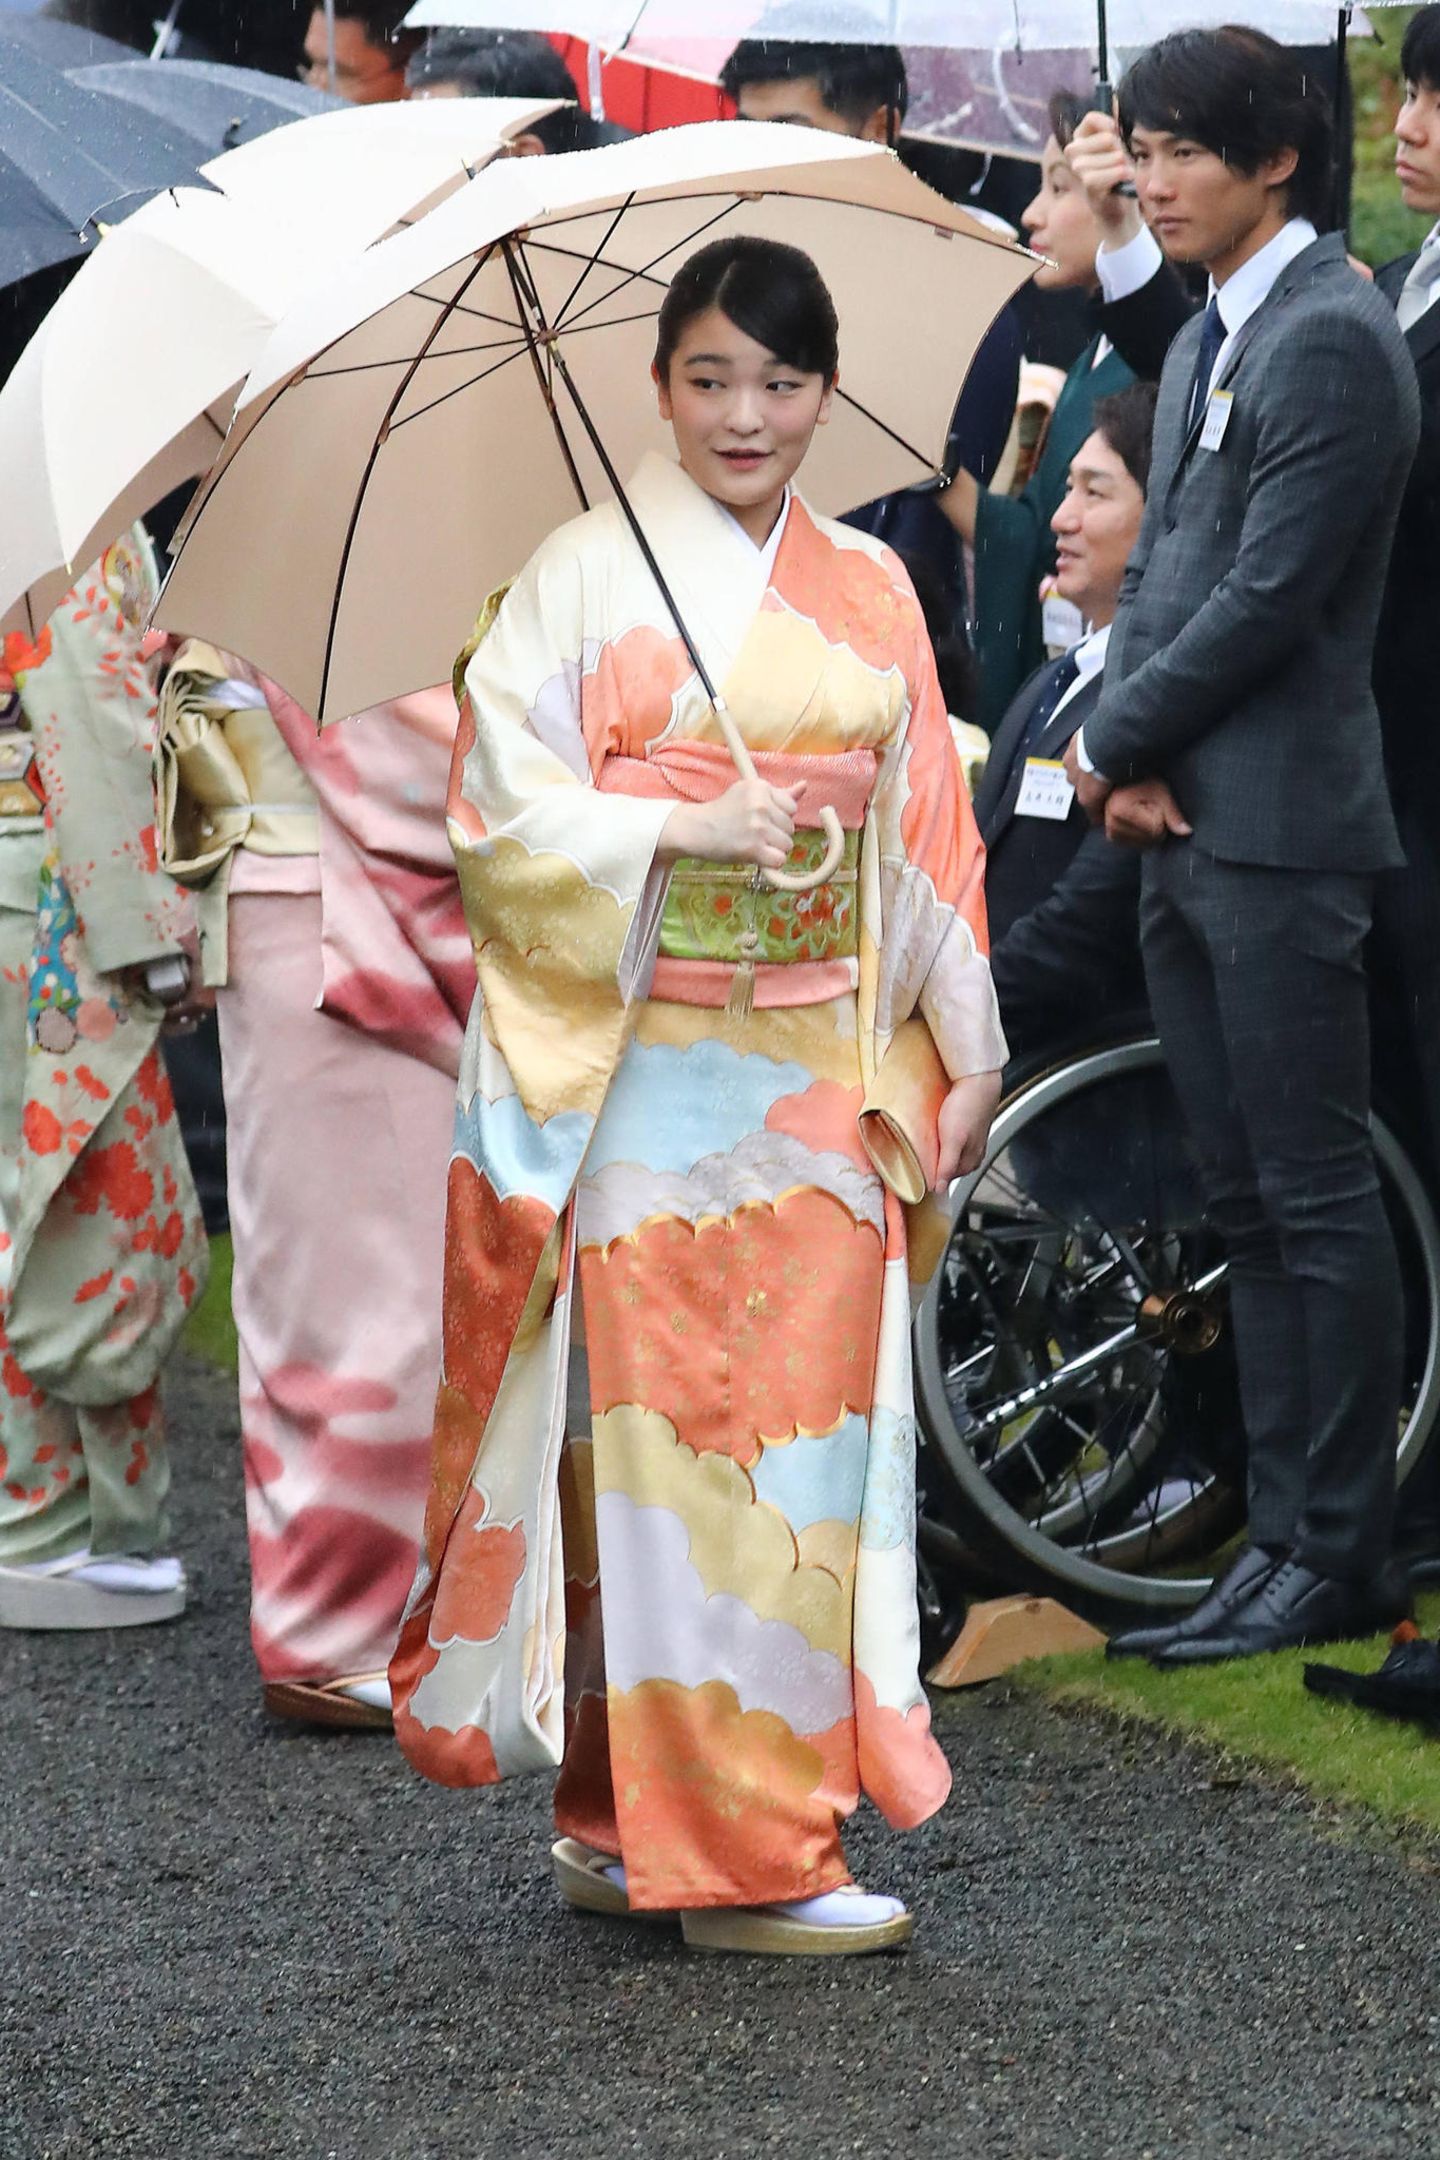 9. November 2018  Was geht Prinzessin Mako von Japan wohl in diesen Momenten durch den Kopf? Die Prinzessin nimmt mit der Kaiserfamilie an der letzten Gartenparty von Kaiser Akihito teil.Doch die Prinzessin bewahrt die Haltung:  Ein Lächeln zwängt Mako zwar hervor, dabei wäre sie unter normalen Umständen gar nich Denn vor knapp einer Woche hätte sie heiraten sollen, wäre nicht so einiges schief gelaufen, denn die Hochzeit mit Kei Komuro wurde mehr oder weniger abgesagt.      